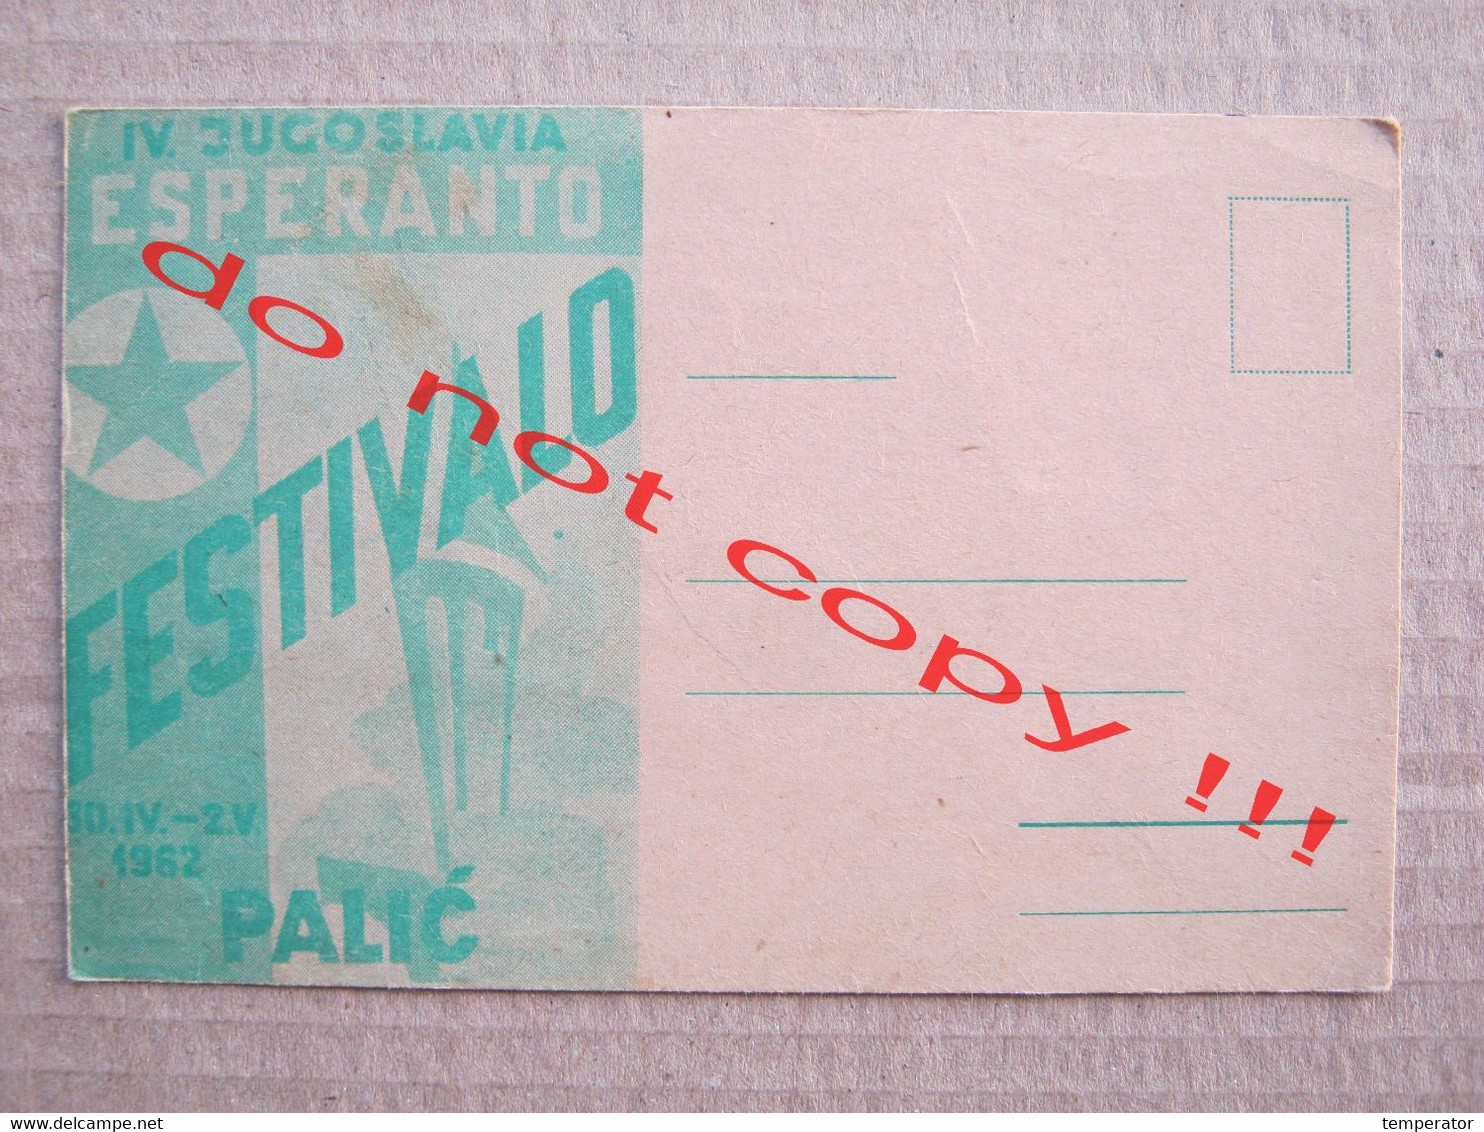 IV. JUGOSLAVIA ESPERANTO FESTIVALO / Palić ( 1962 ) - Esperanto